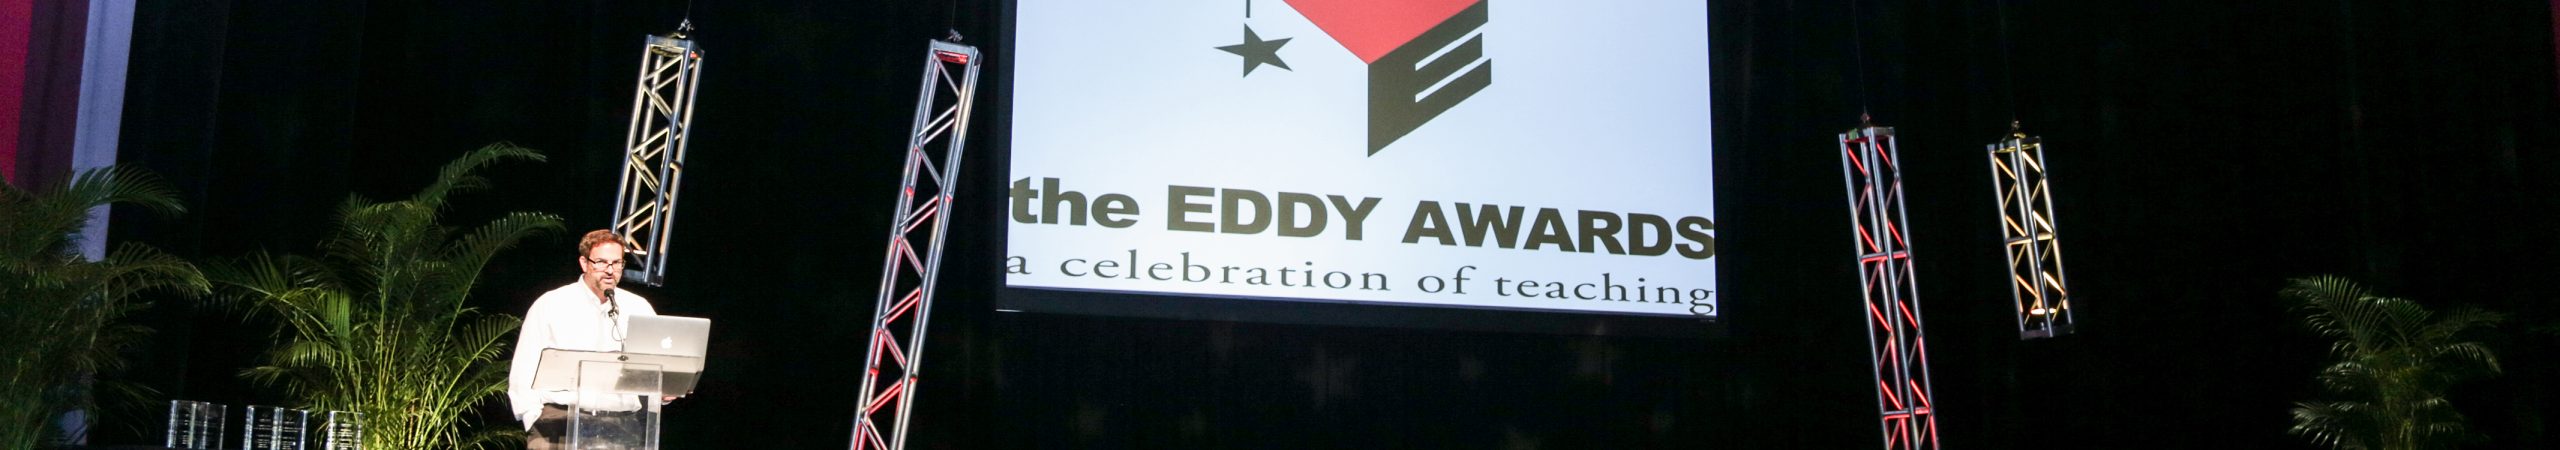 Eddy Awards 2015